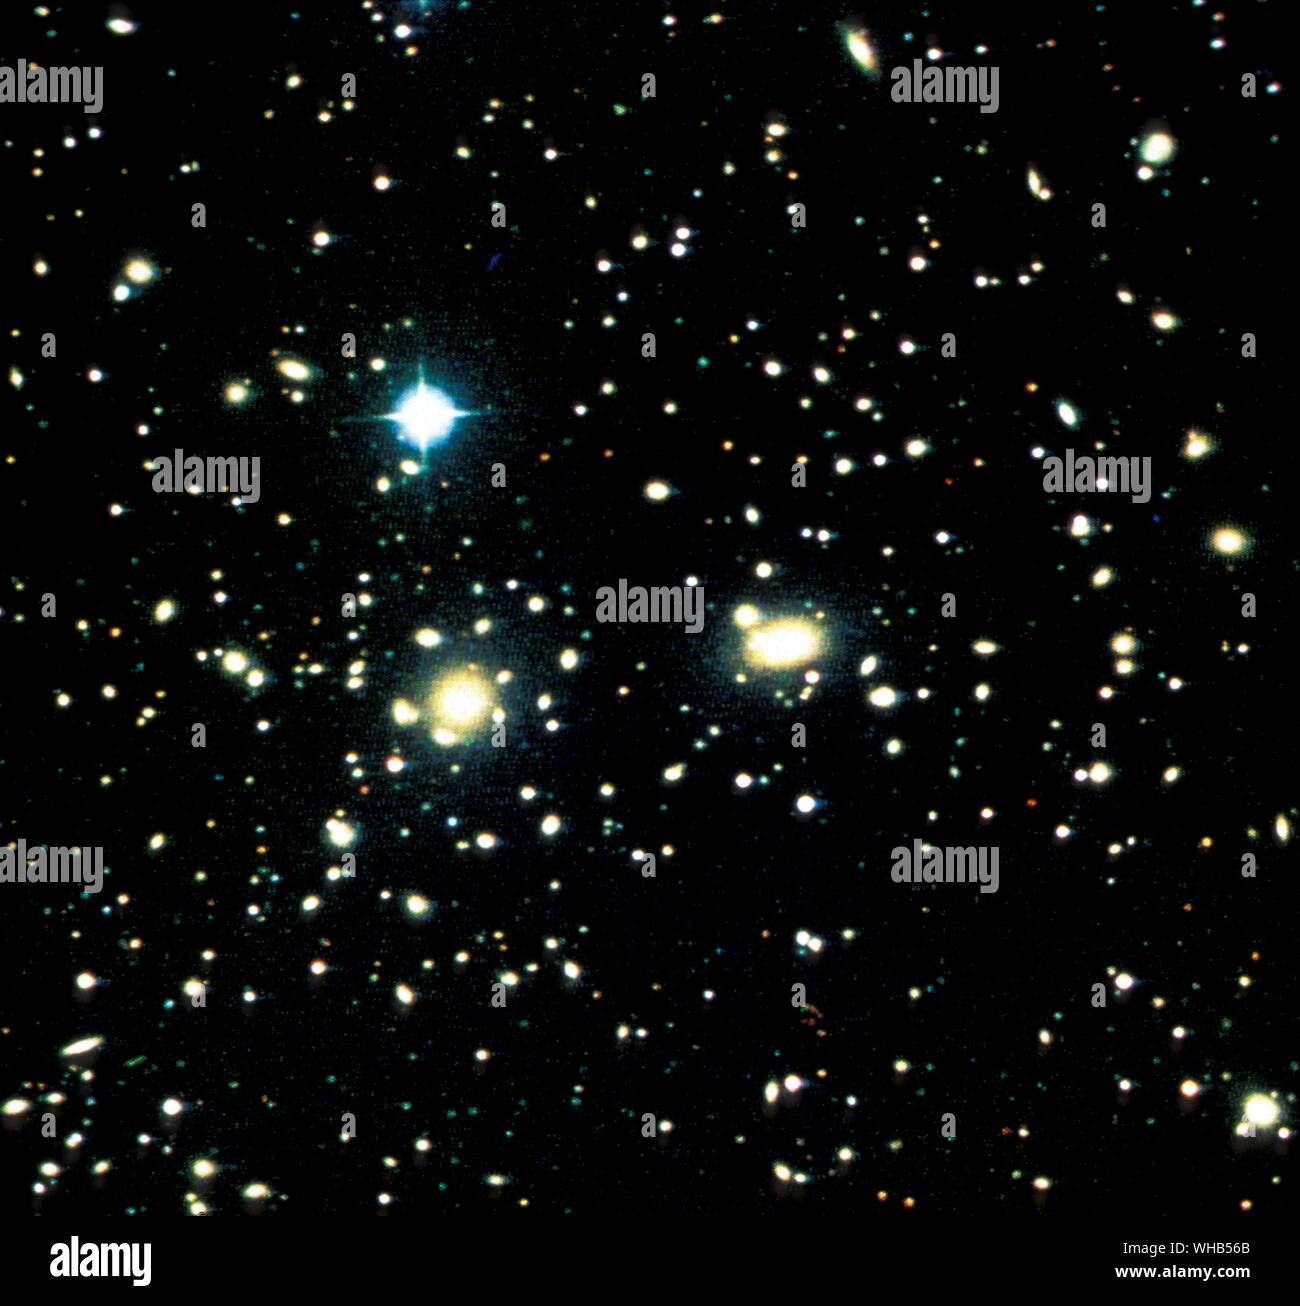 Coma ammassi di galassie Il Coma Cluster (Abell 1656) è un grande ammasso di galassie che contiene oltre mille identificate galassie. Insieme con il cluster di Leo (Abell 1367) è uno dei due principali aggregati comprendenti il coma Supercluster.. Il quadro strumenti indica la distanza dalla Terra è di 99 Mpc (321 milioni di anni luce). Le sue dieci più brillanti le galassie a spirale hanno magnitudini apparenti di 12-14 che sono osservabili con telescopi amatoriali più grandi di 20 cm. La regione centrale è dominato da due giganti di galassie ellittiche: NGC 4874 e NGC 4889. Il cluster è di pochi gradi nord galactic Foto Stock